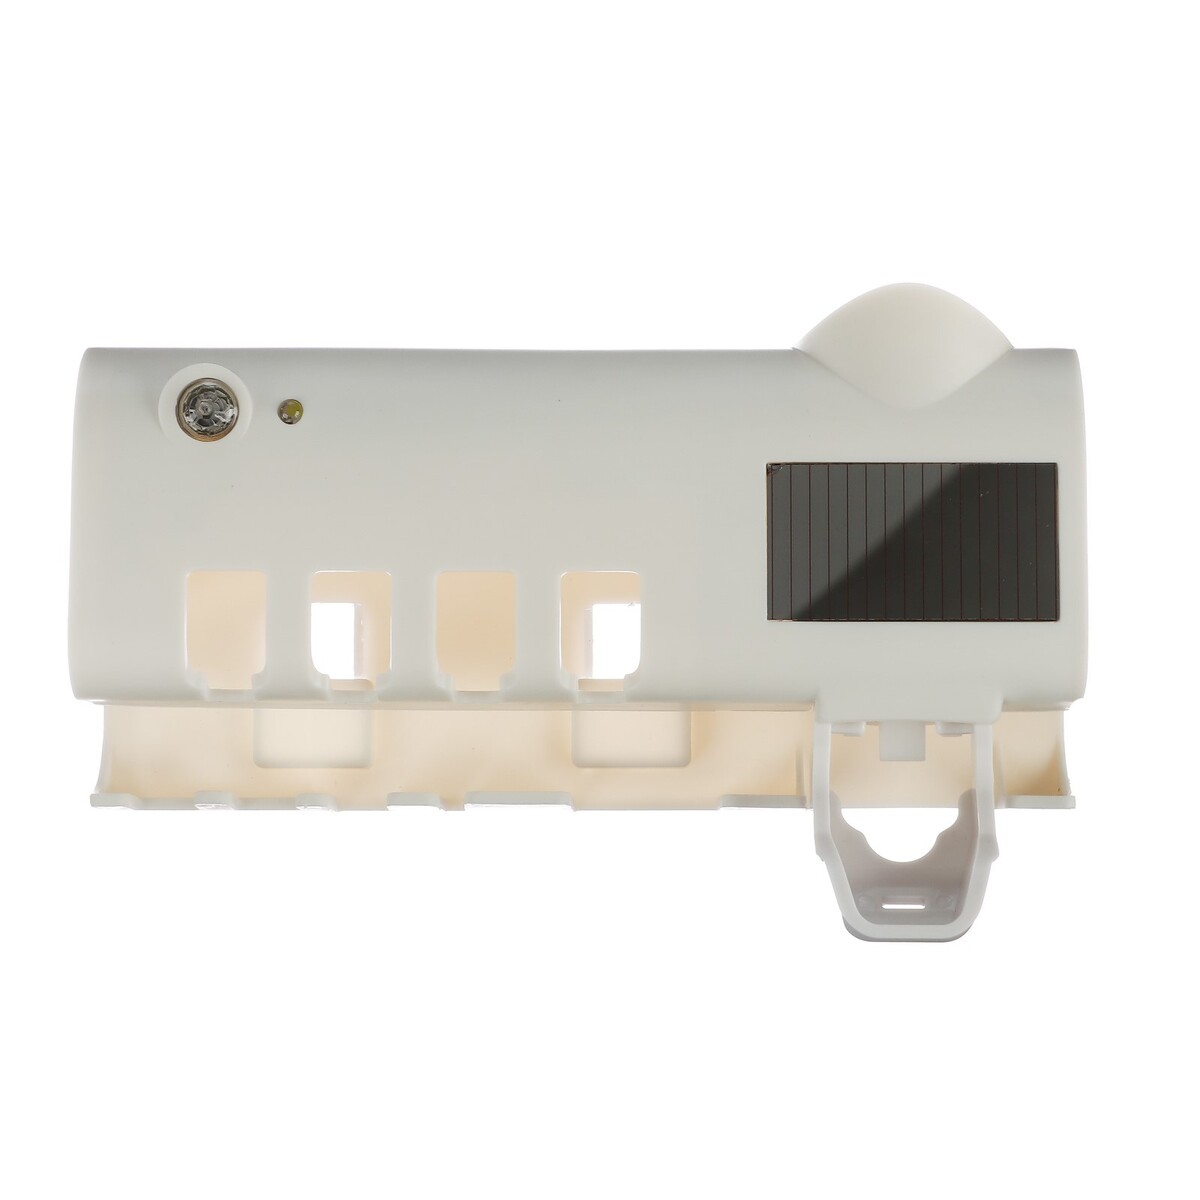 Портативный стерилизатор для зубных щеток lgs-08, 2000 ма/ч, акб, белый портативный вентилятор xiaomi solove n9 3 скорости type c 2000 мач зеленый